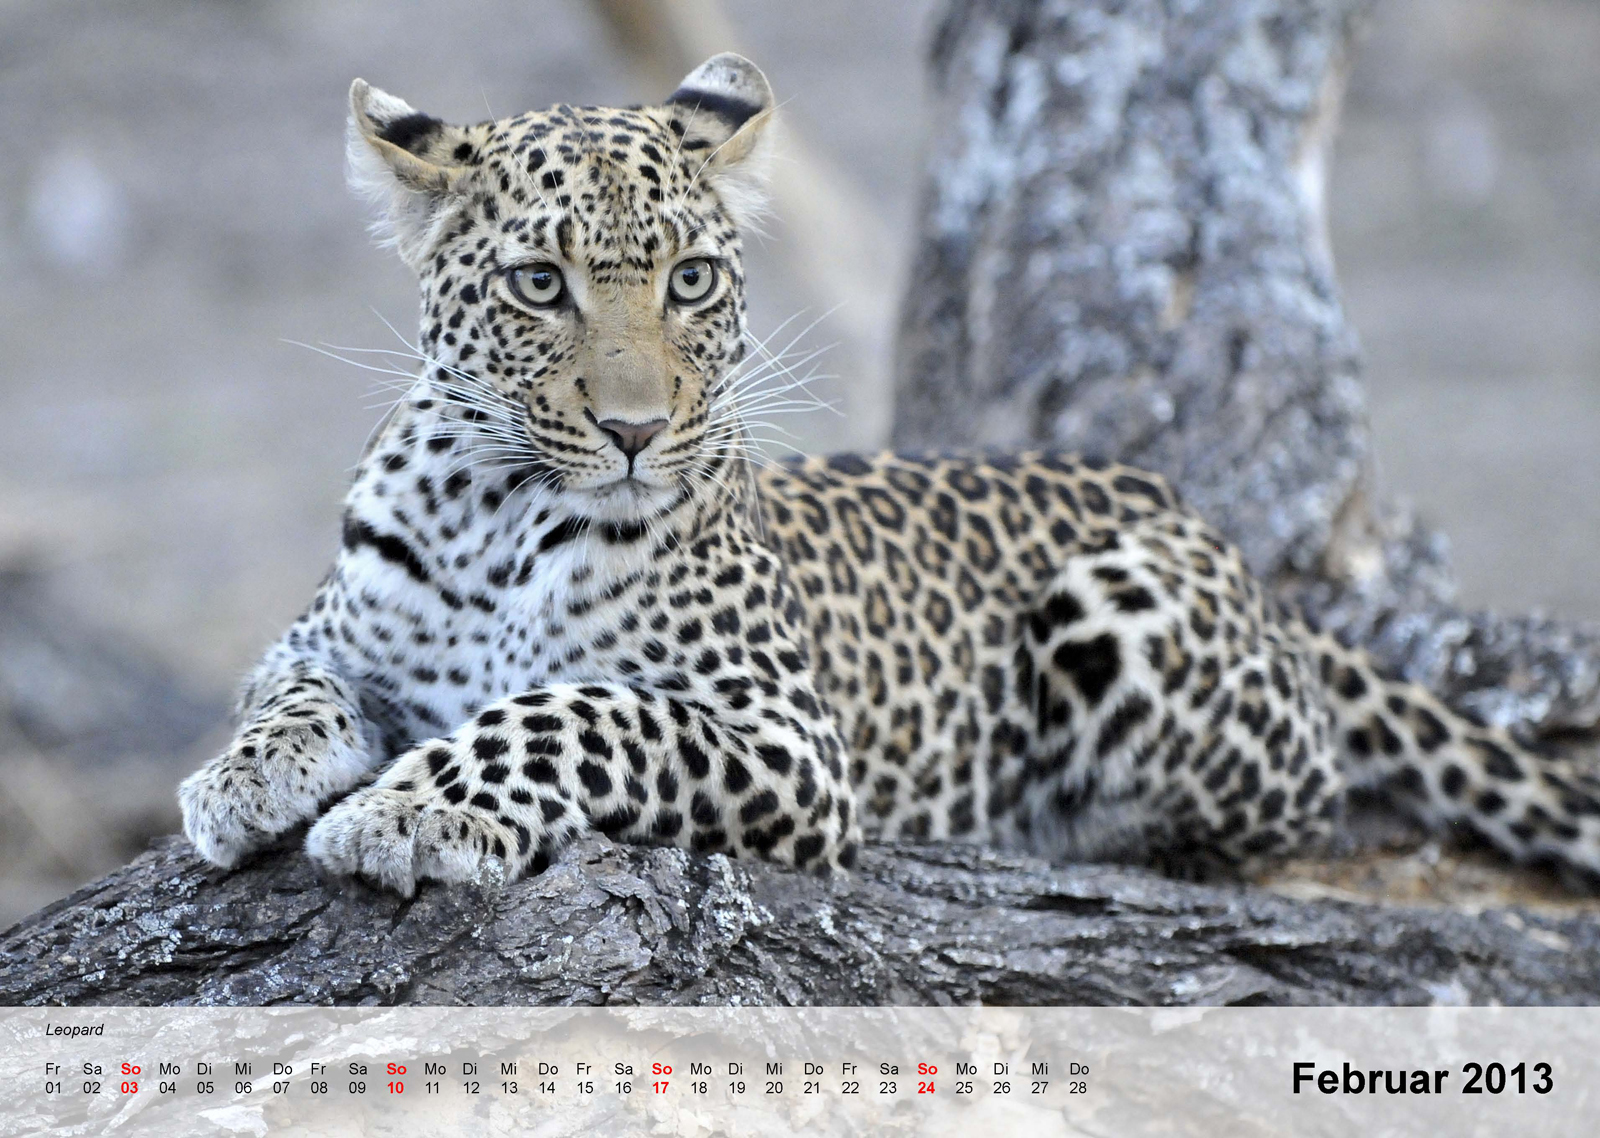 Leopard - Kalender 2013 - Februar